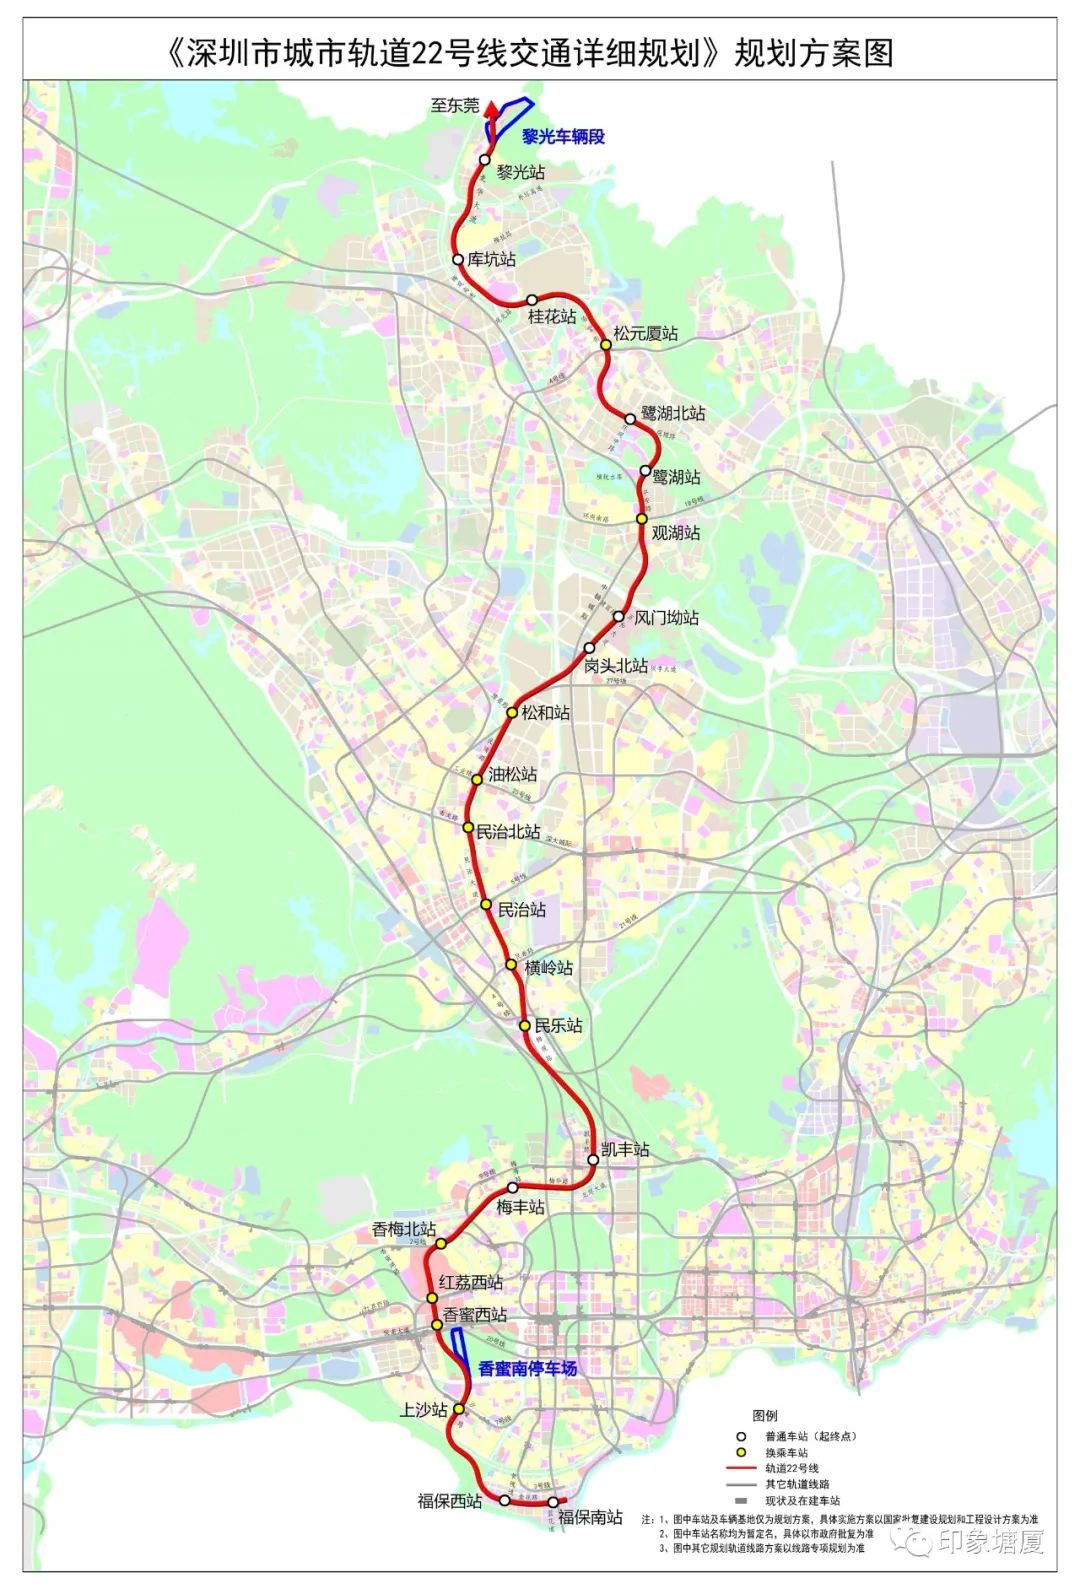 深圳地铁列车22号线规划获批,意味着深圳地铁将通到塘厦人家门口,距离